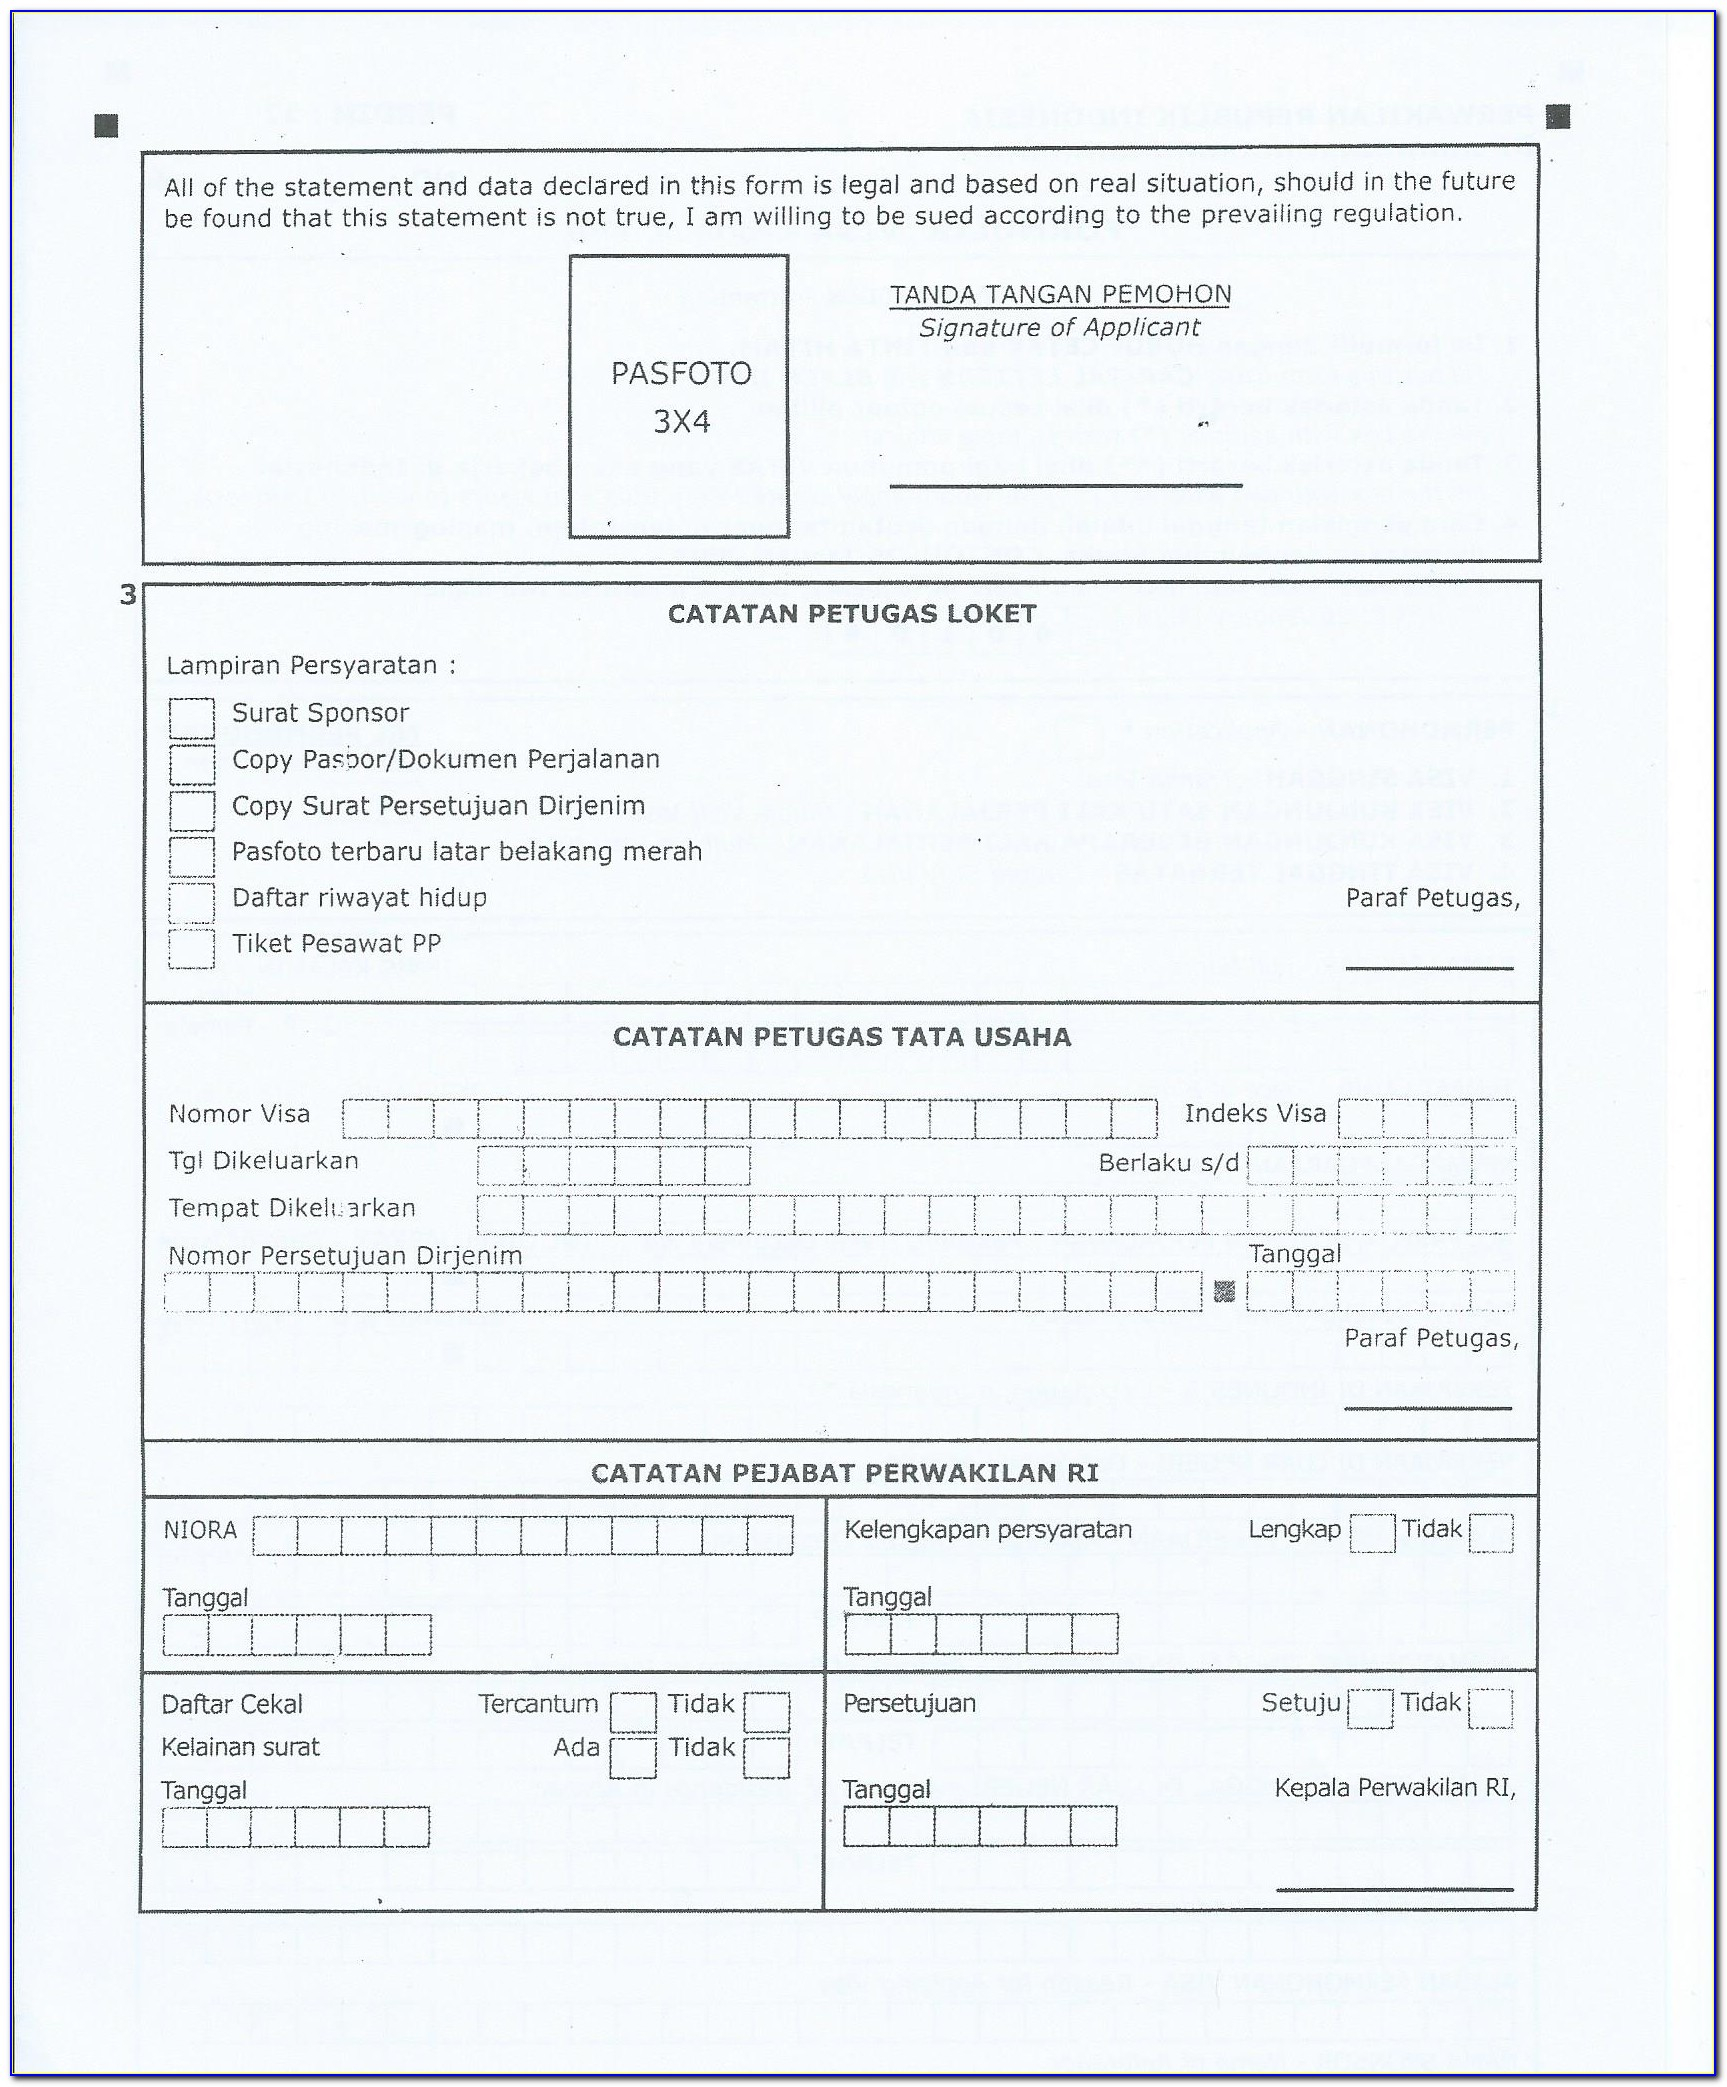 Nigerian Passport Renewal Form Online Uk Vincegray2014